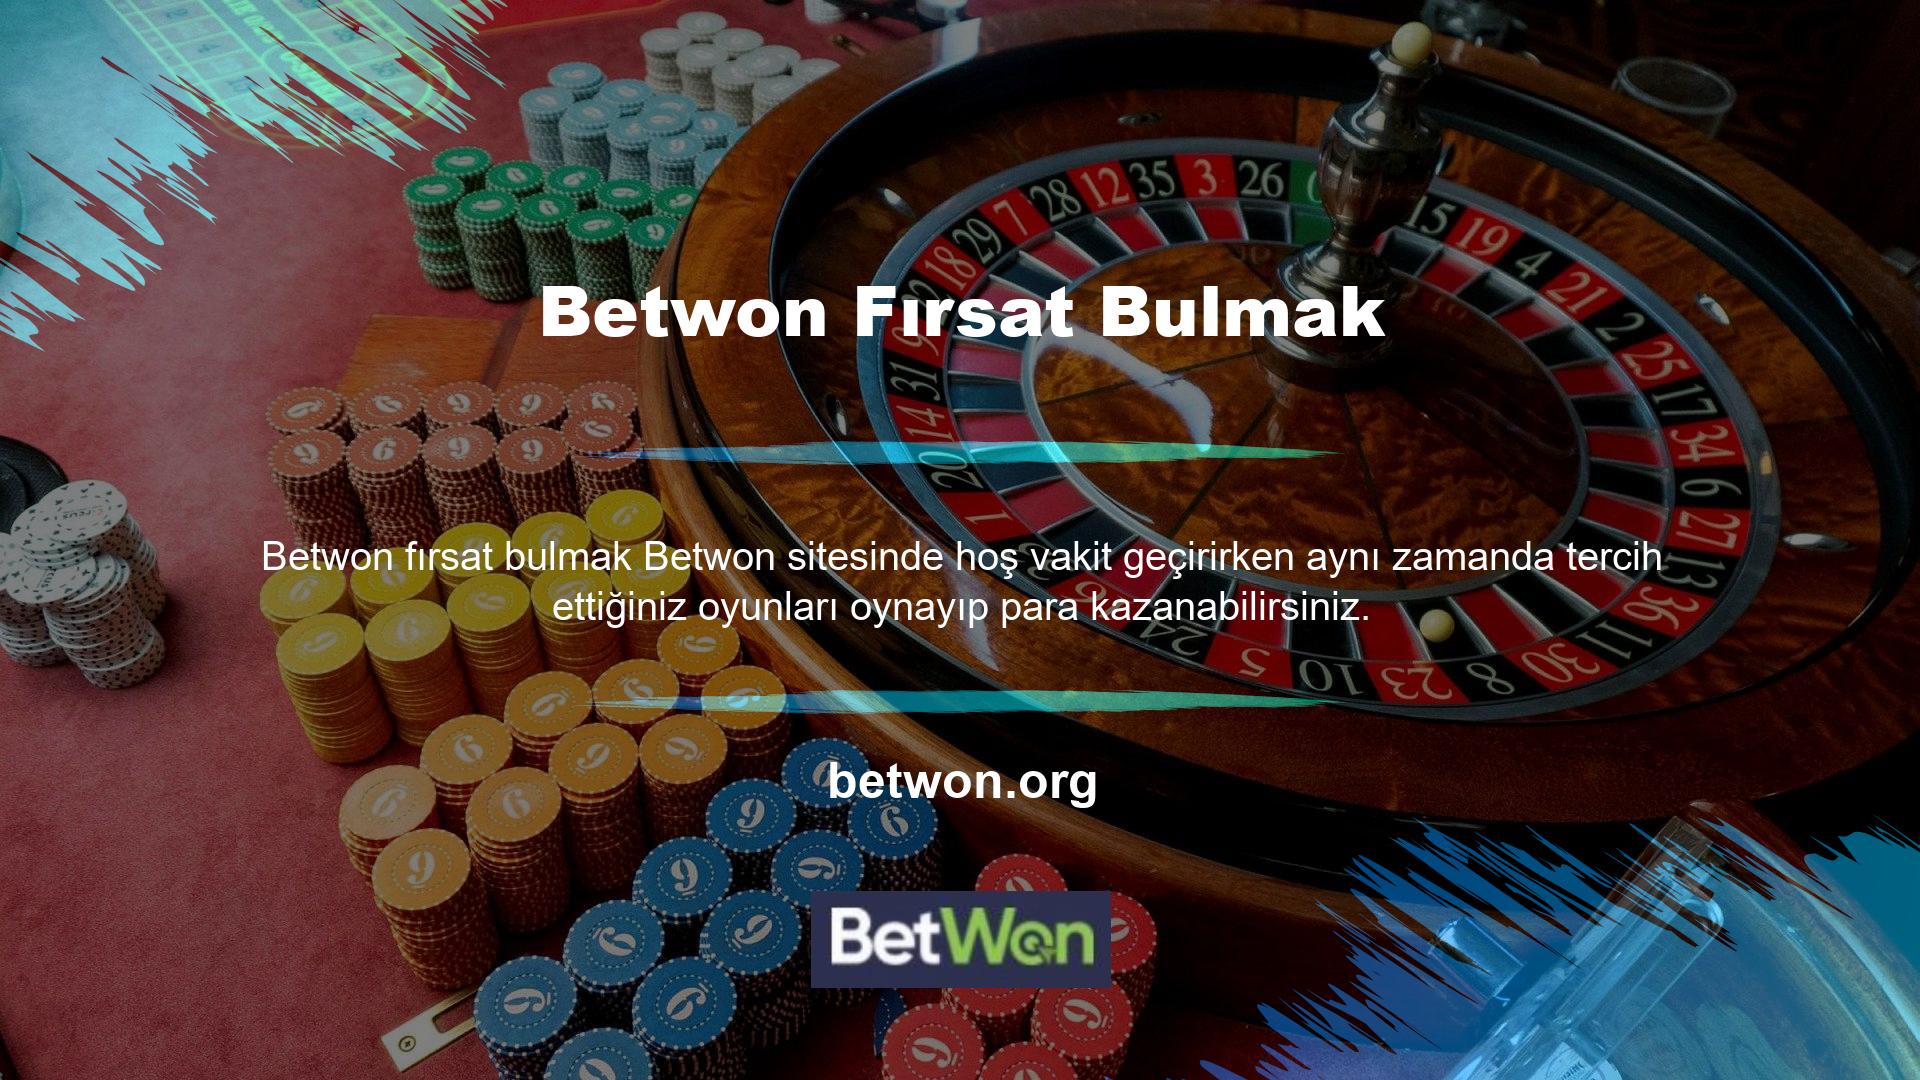 Betwon canlı bahis ve casino oyun sitesini kullanırken, bahisçi kazancını çekebilir ve normalde yaptığı gibi banka hesabına yatırabilir